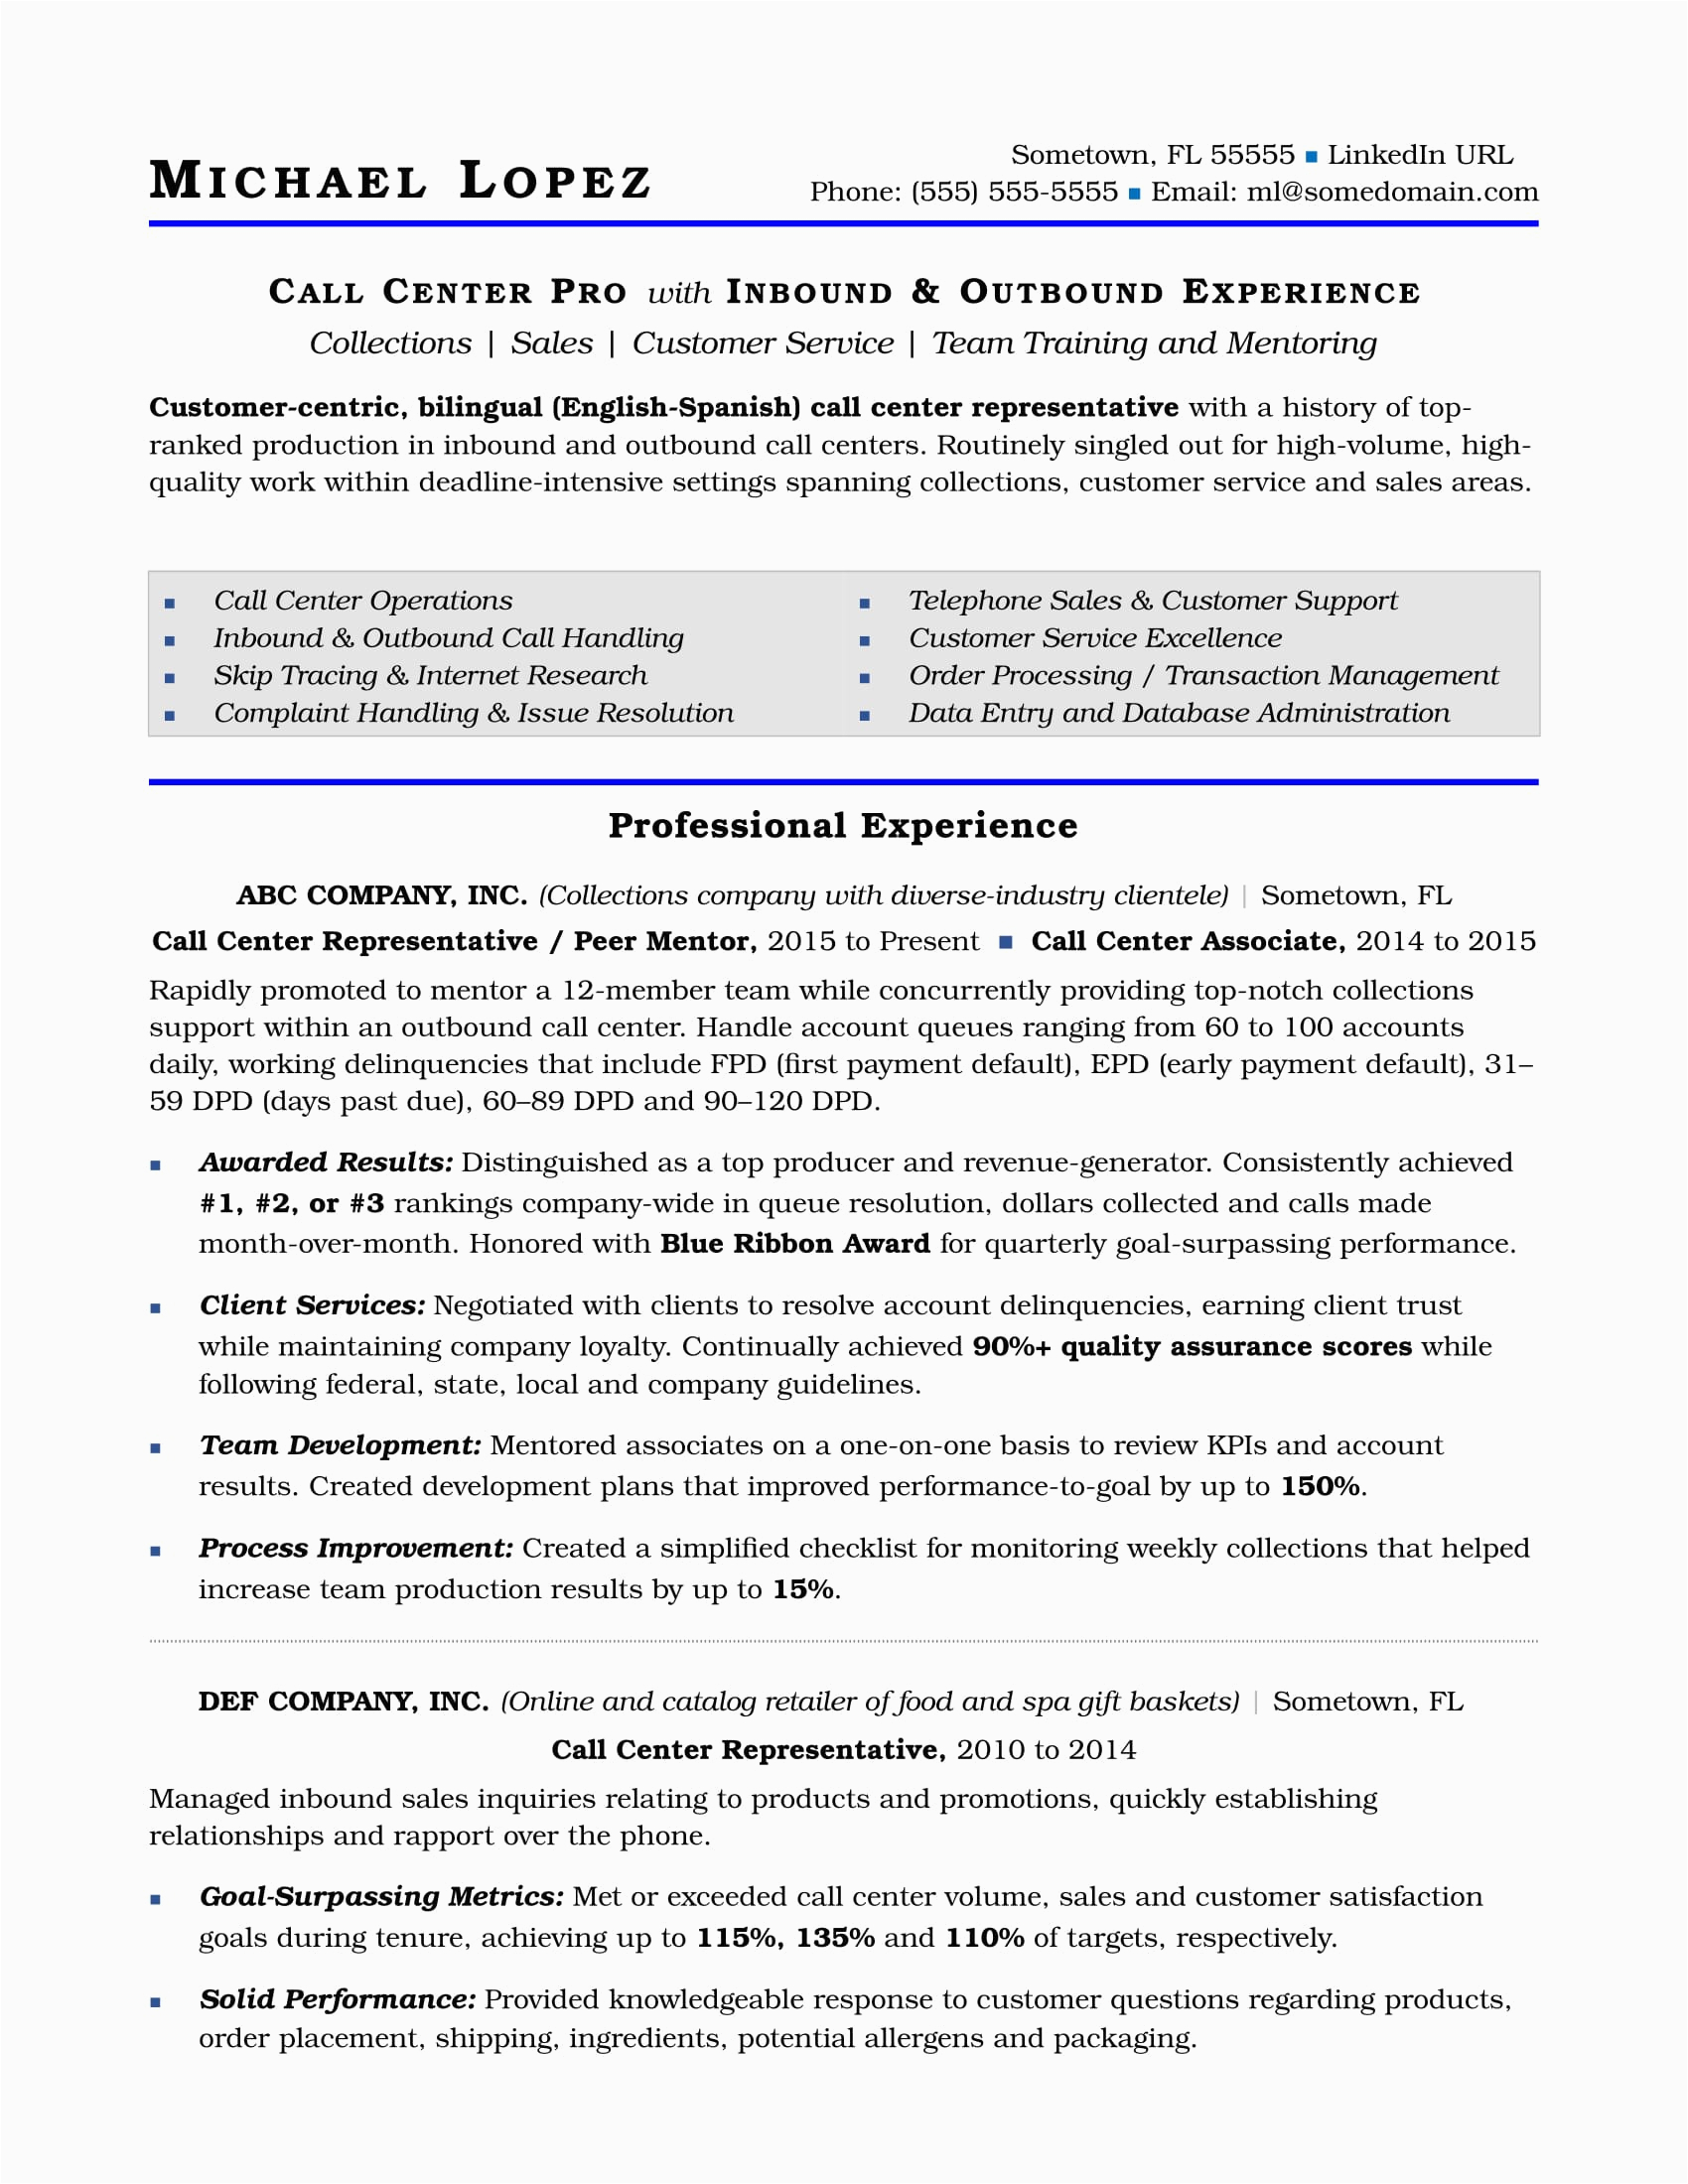 Sample Resume for Call Center Agent Call Center Resume Sample